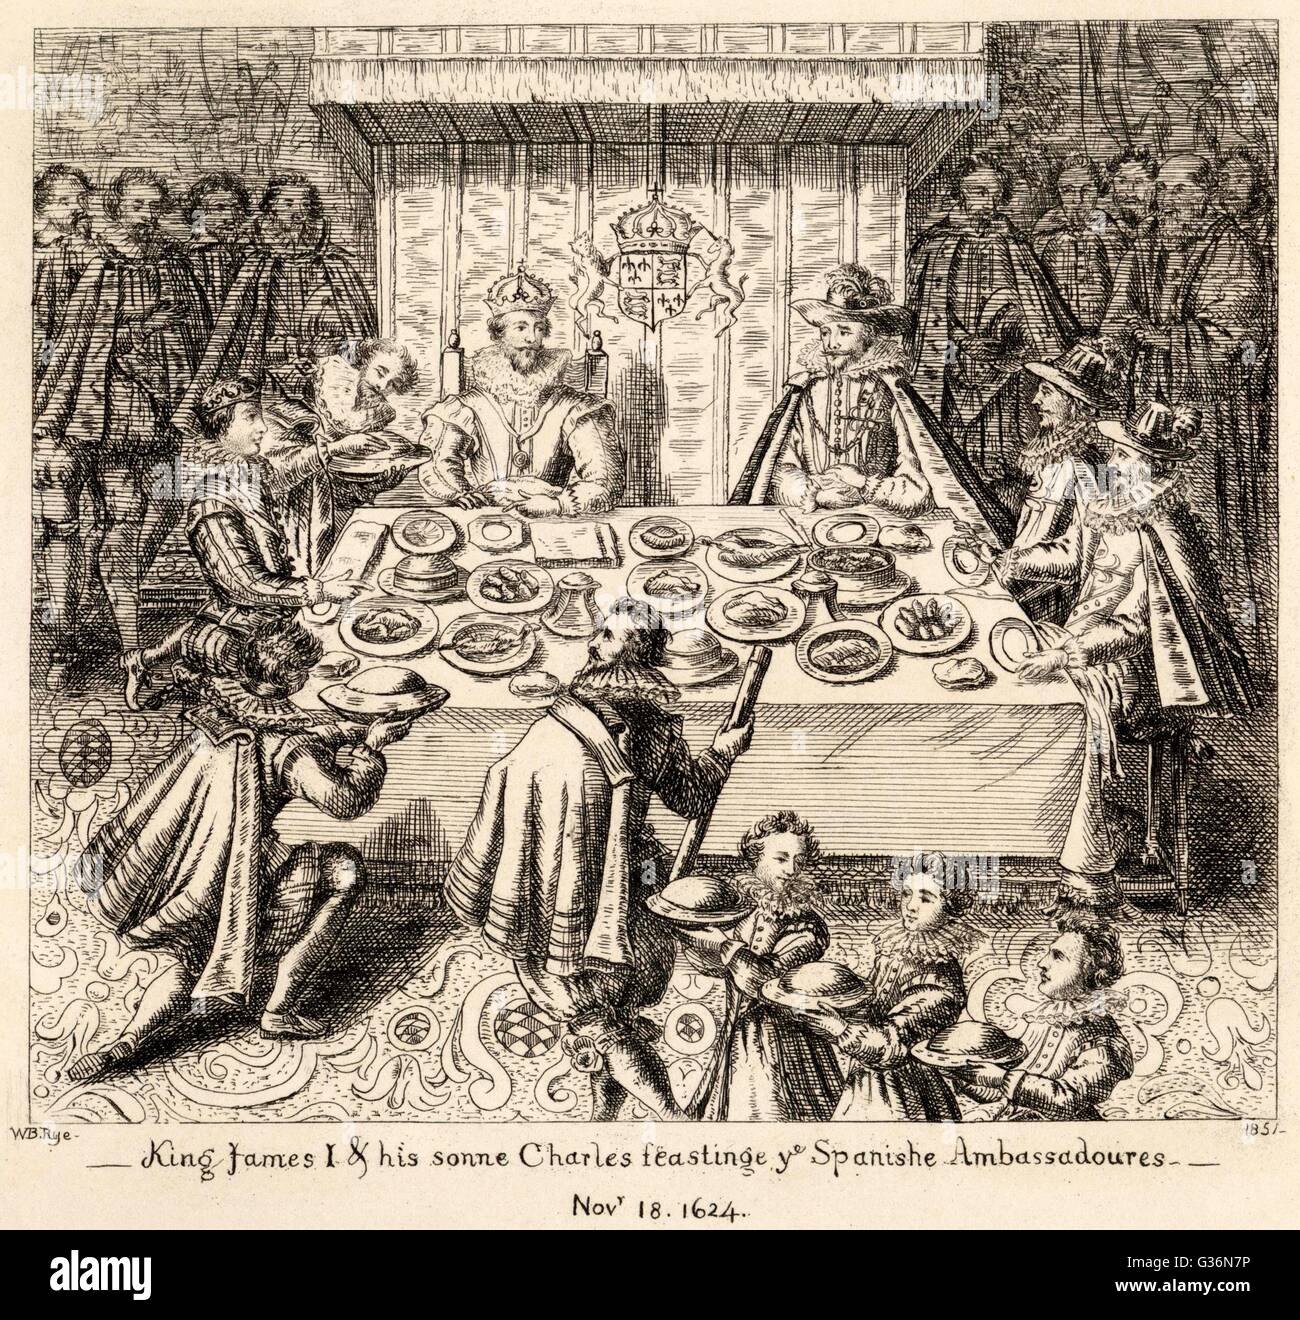 König James i. von England (und VI von Schottland) mit den spanischen Botschaftern schlemmen.         Datum: 18. November 1624 Stockfoto